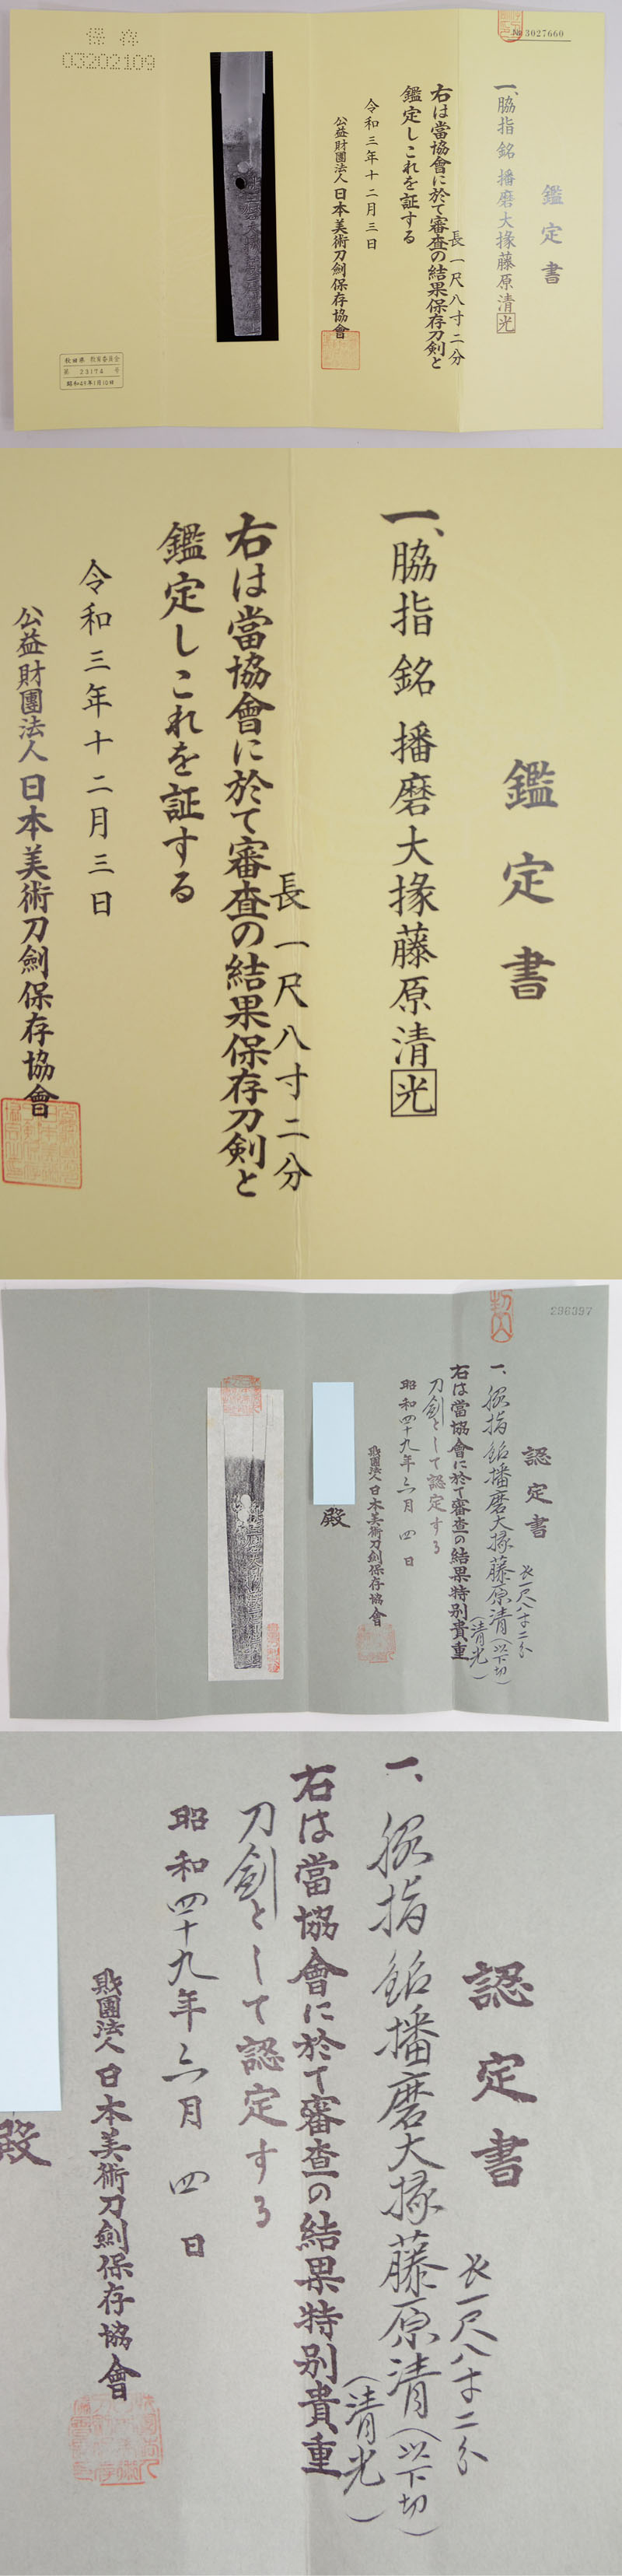 脇差　播磨大掾藤原清光 (業物) Picture of Certificate